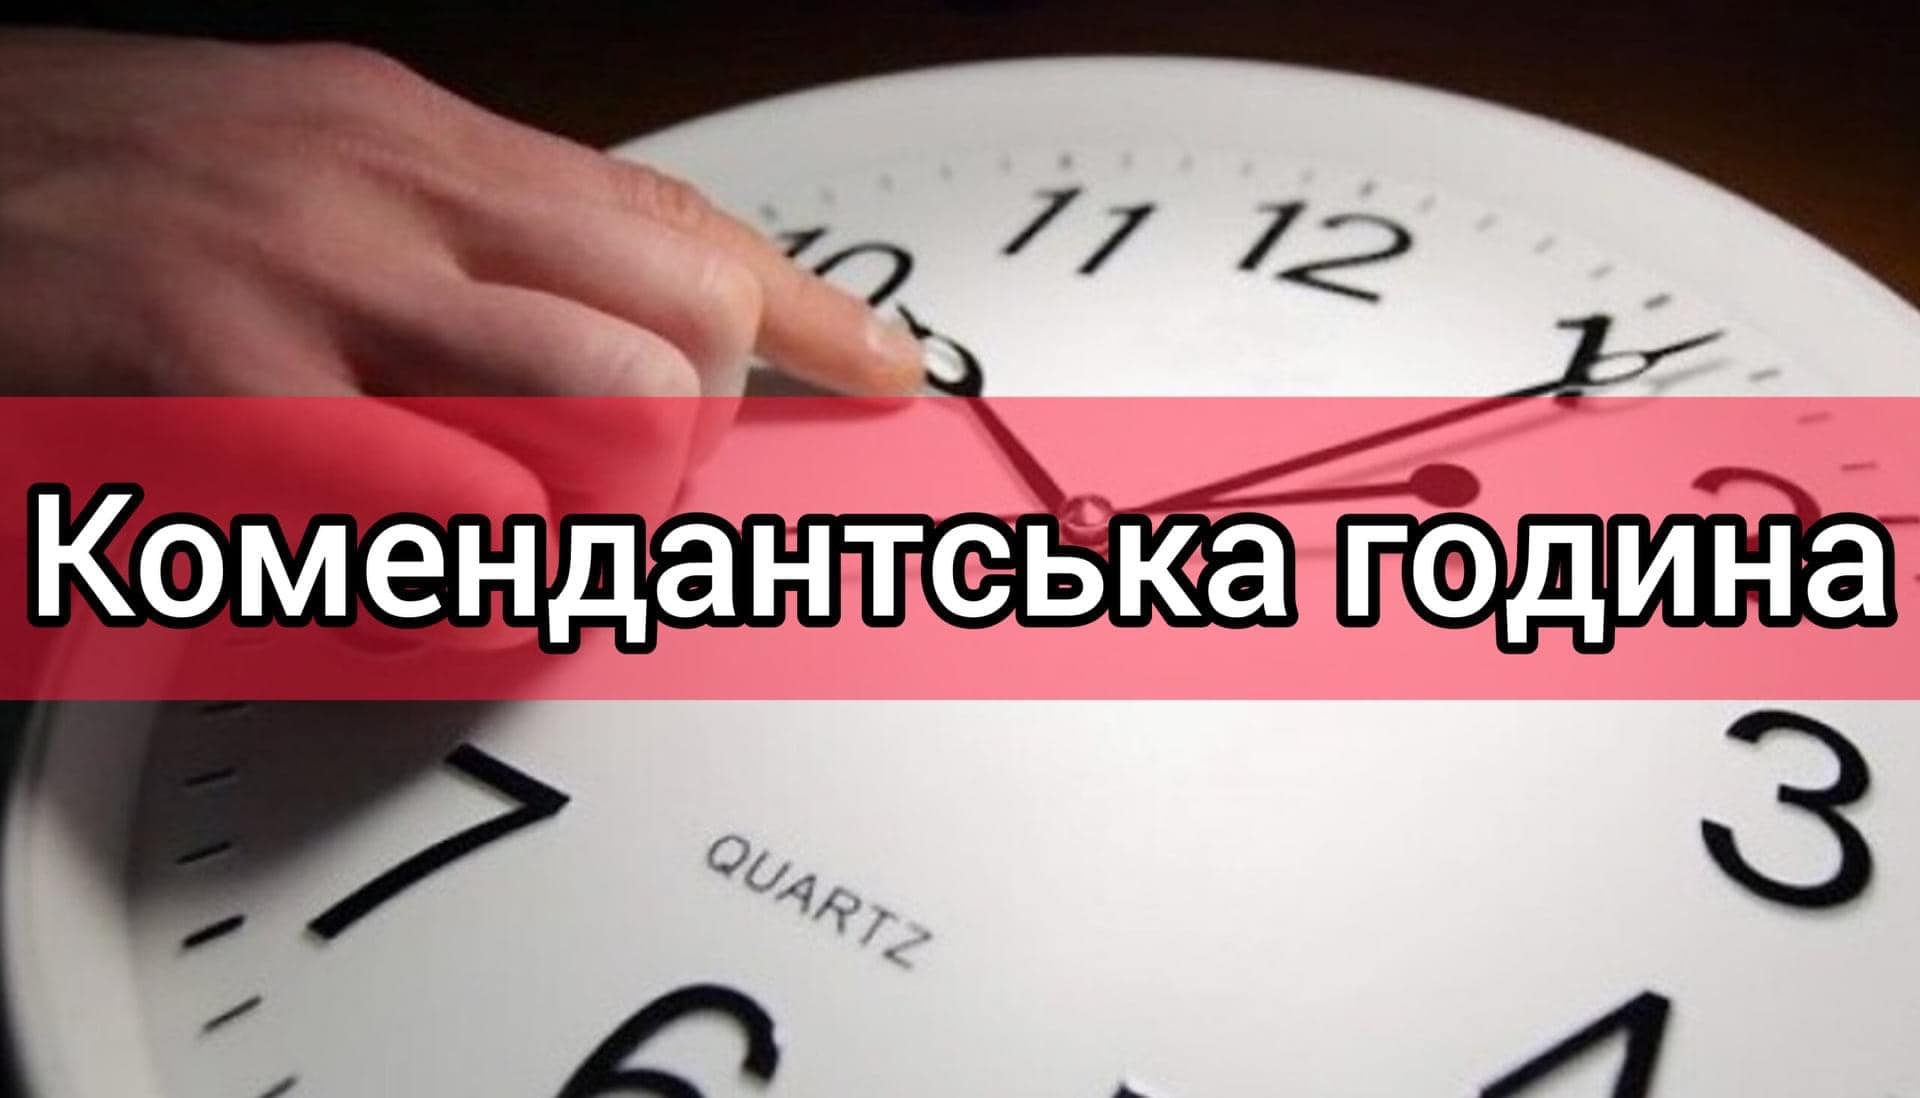 З 1 грудня комендантська година на Миколаївщині, окрім декількох громад, буде з 00:00 до 05:00 (ДОКУМЕНТ) 47